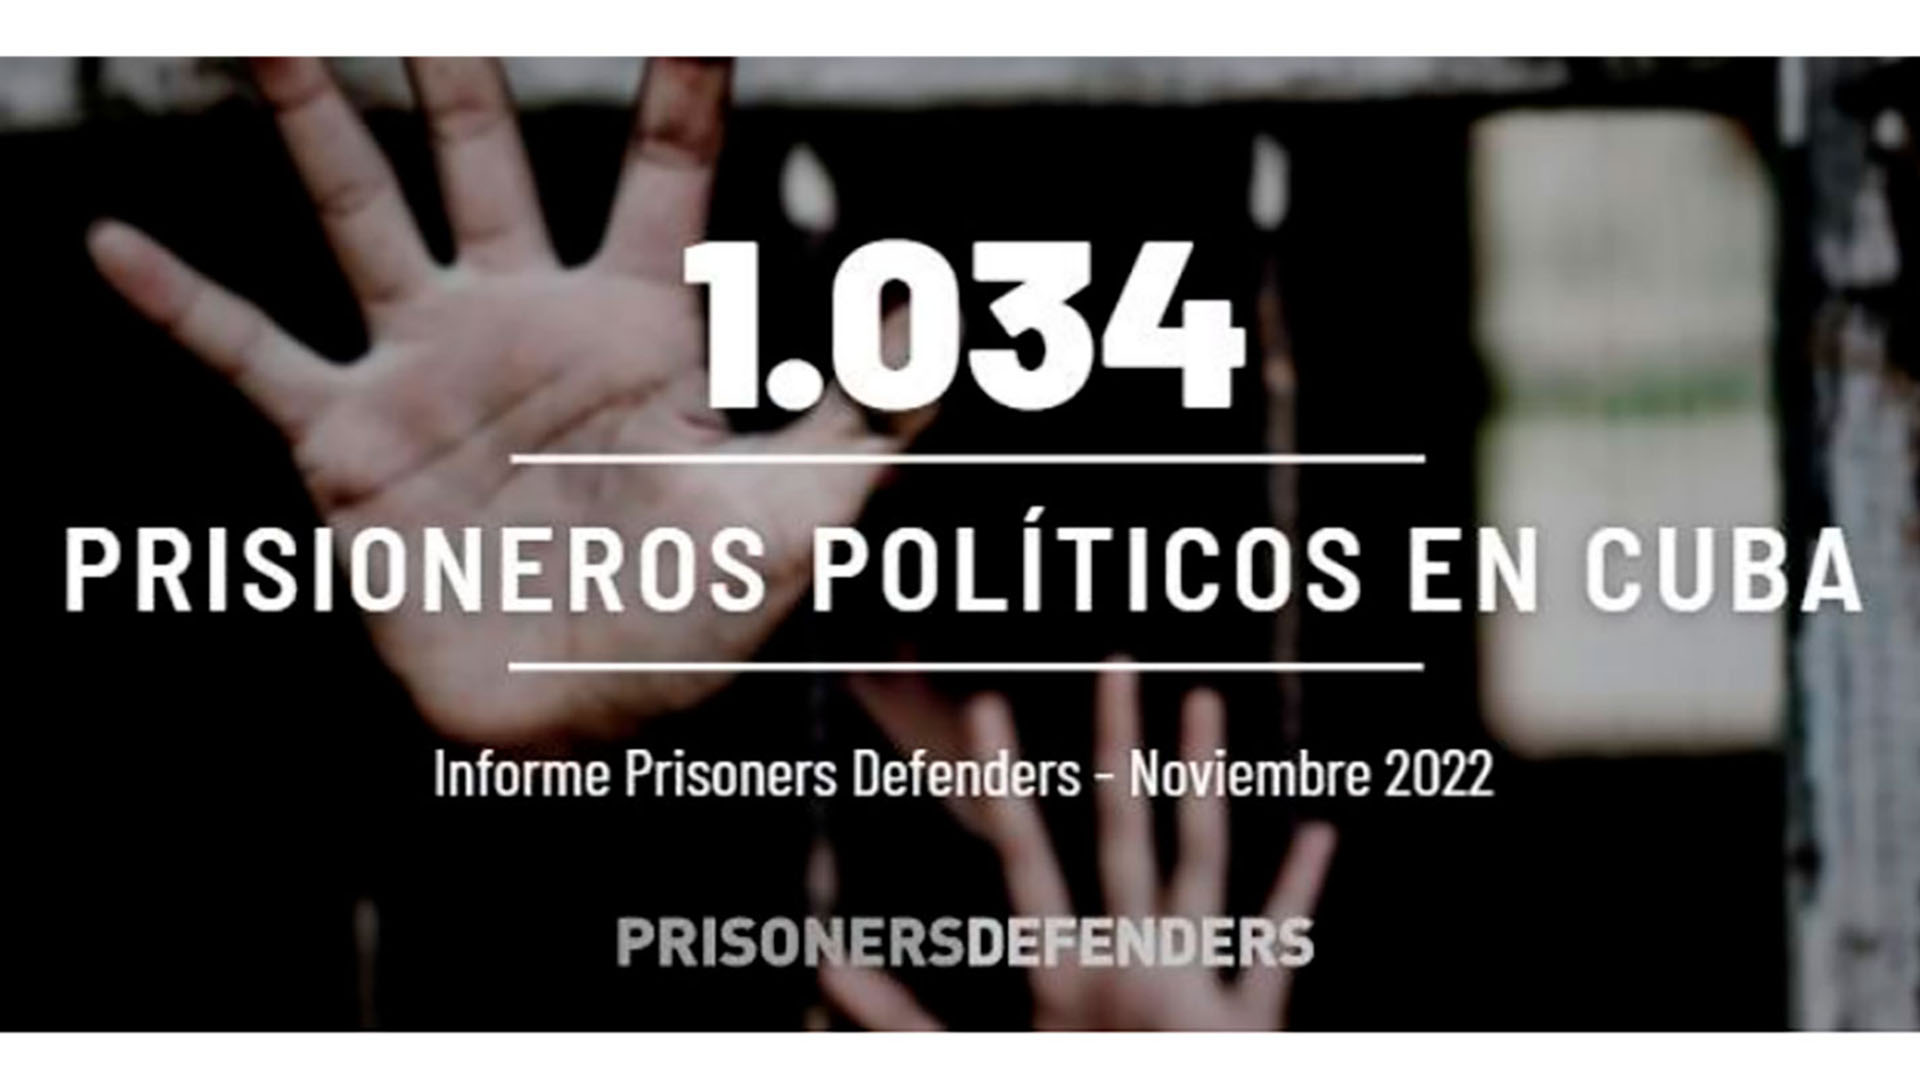 Prisoners Defenders denunció que hay 1034 presos políticos en Cuba en estos momentos (Prisioners Defenders)